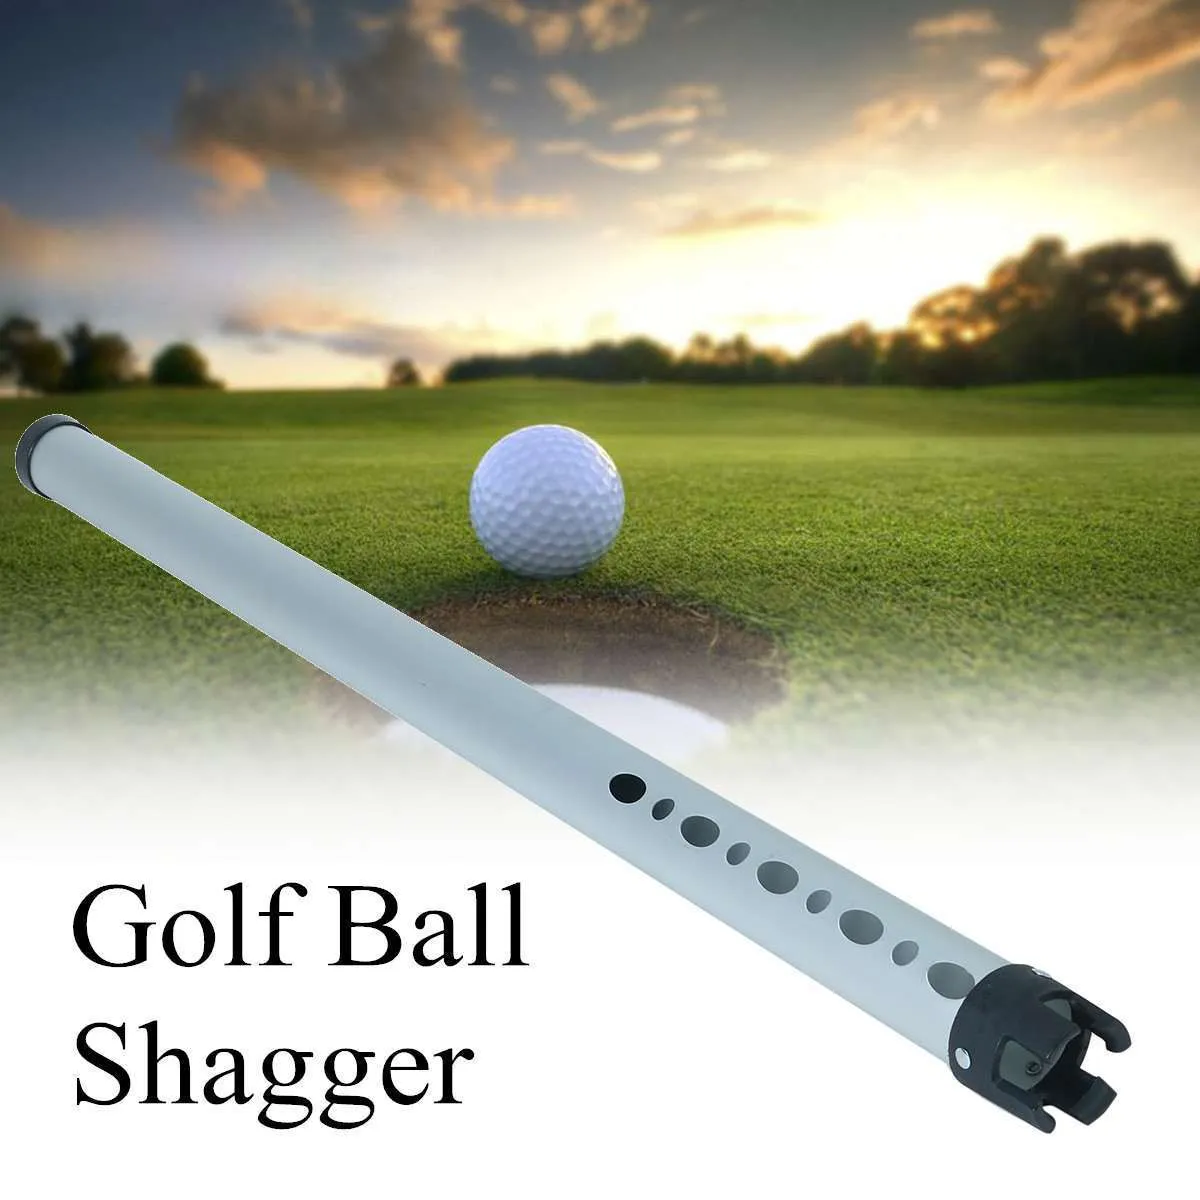 Draagbare aluminium shag tube oefening golfbal shagger picker hold up 23 ballen pick -up ballen opslaggolfaccessoire 98 cm 24110016